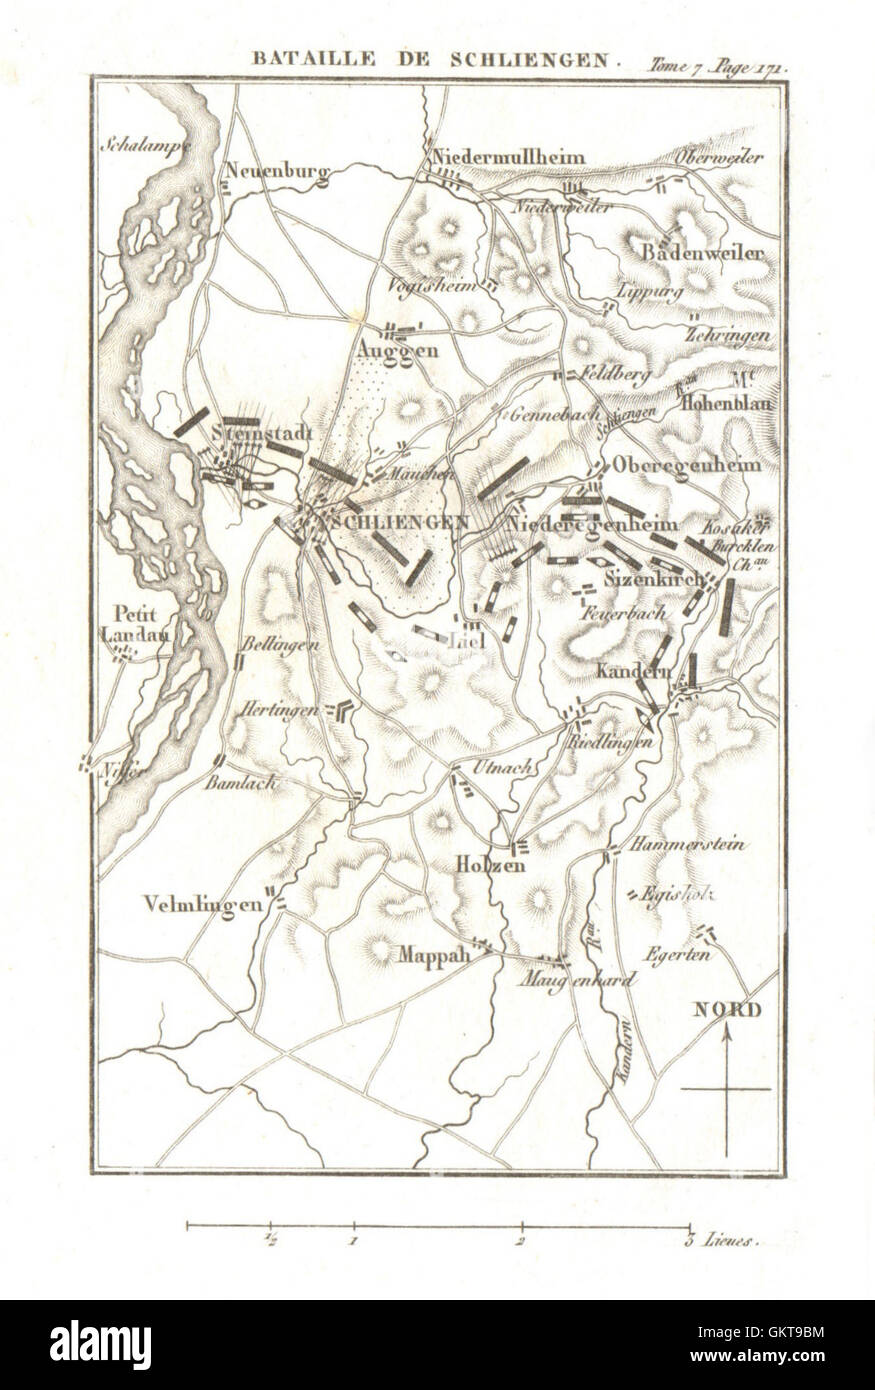 Battle of Schliengen 1796. War of the First Coalition.Baden-Württemberg 1818 map Stock Photo